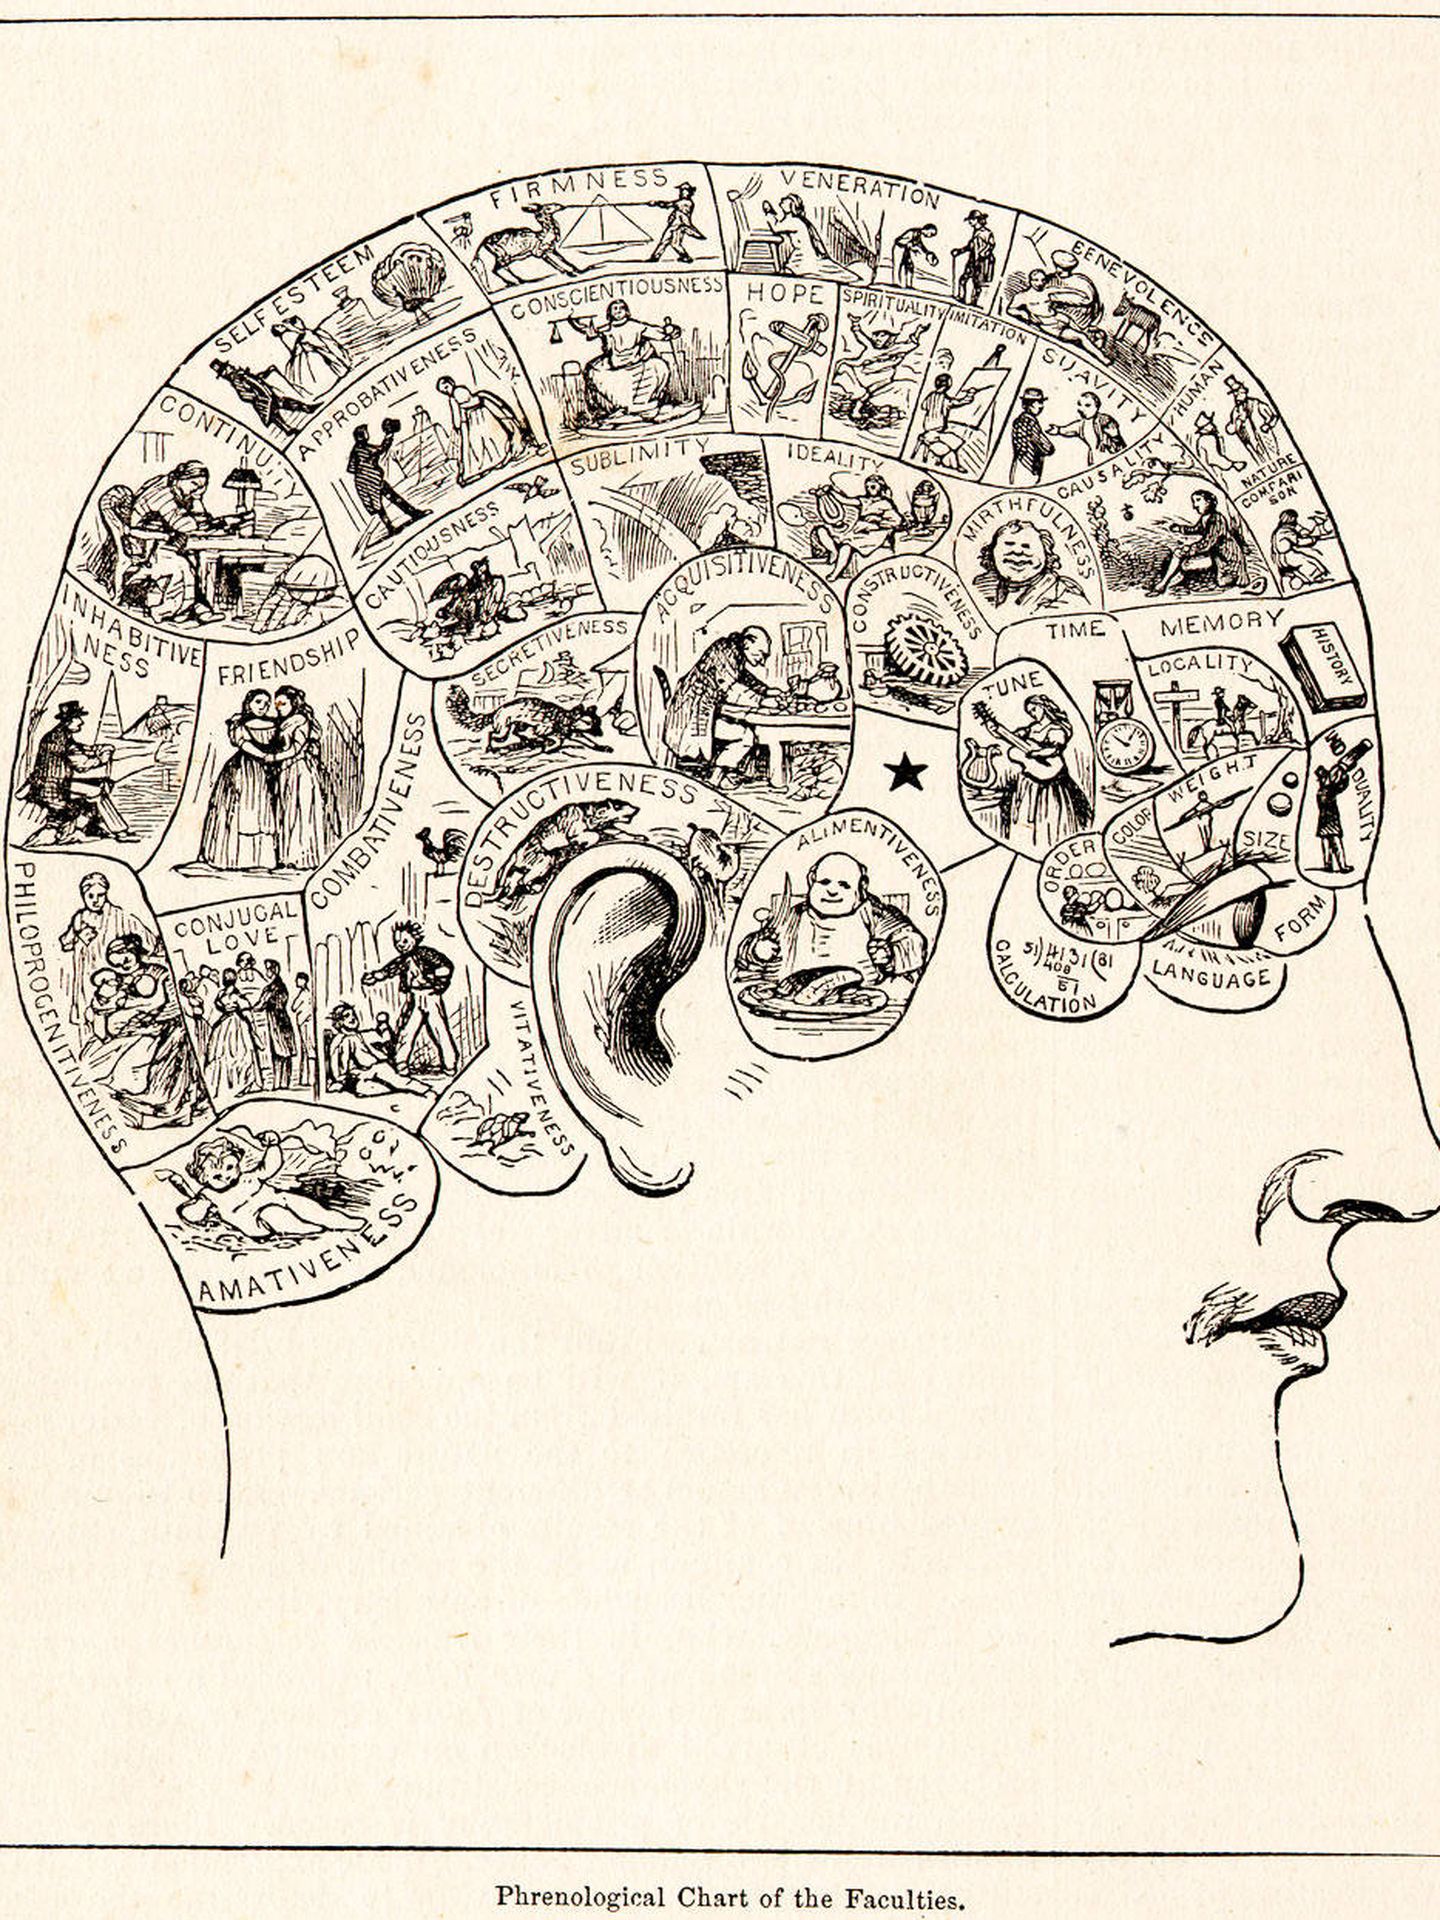 Una ilustración del siglo XIX típica sobre frenología